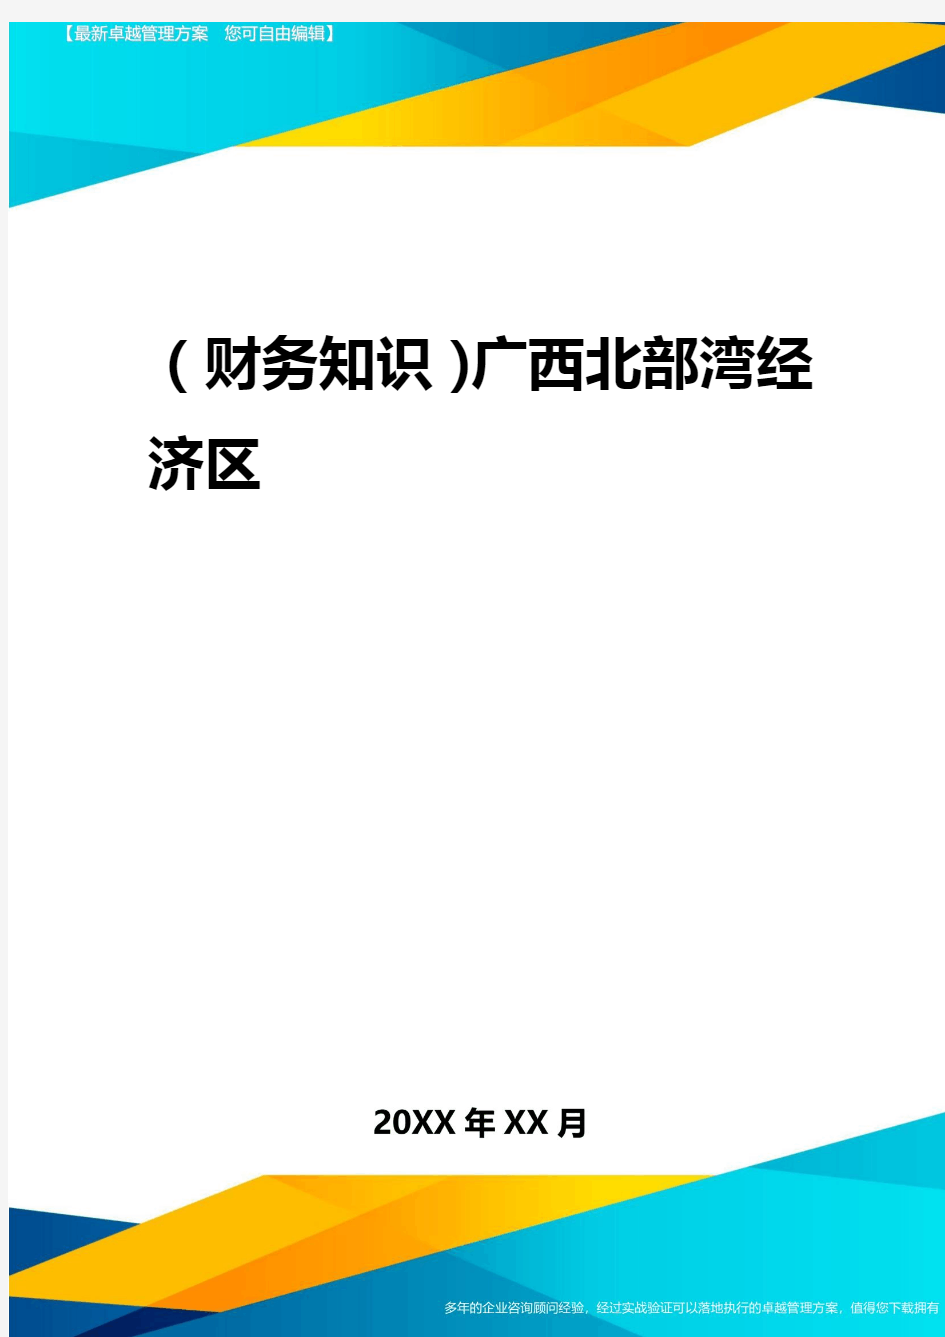 2020年(财务知识)广西北部湾经济区